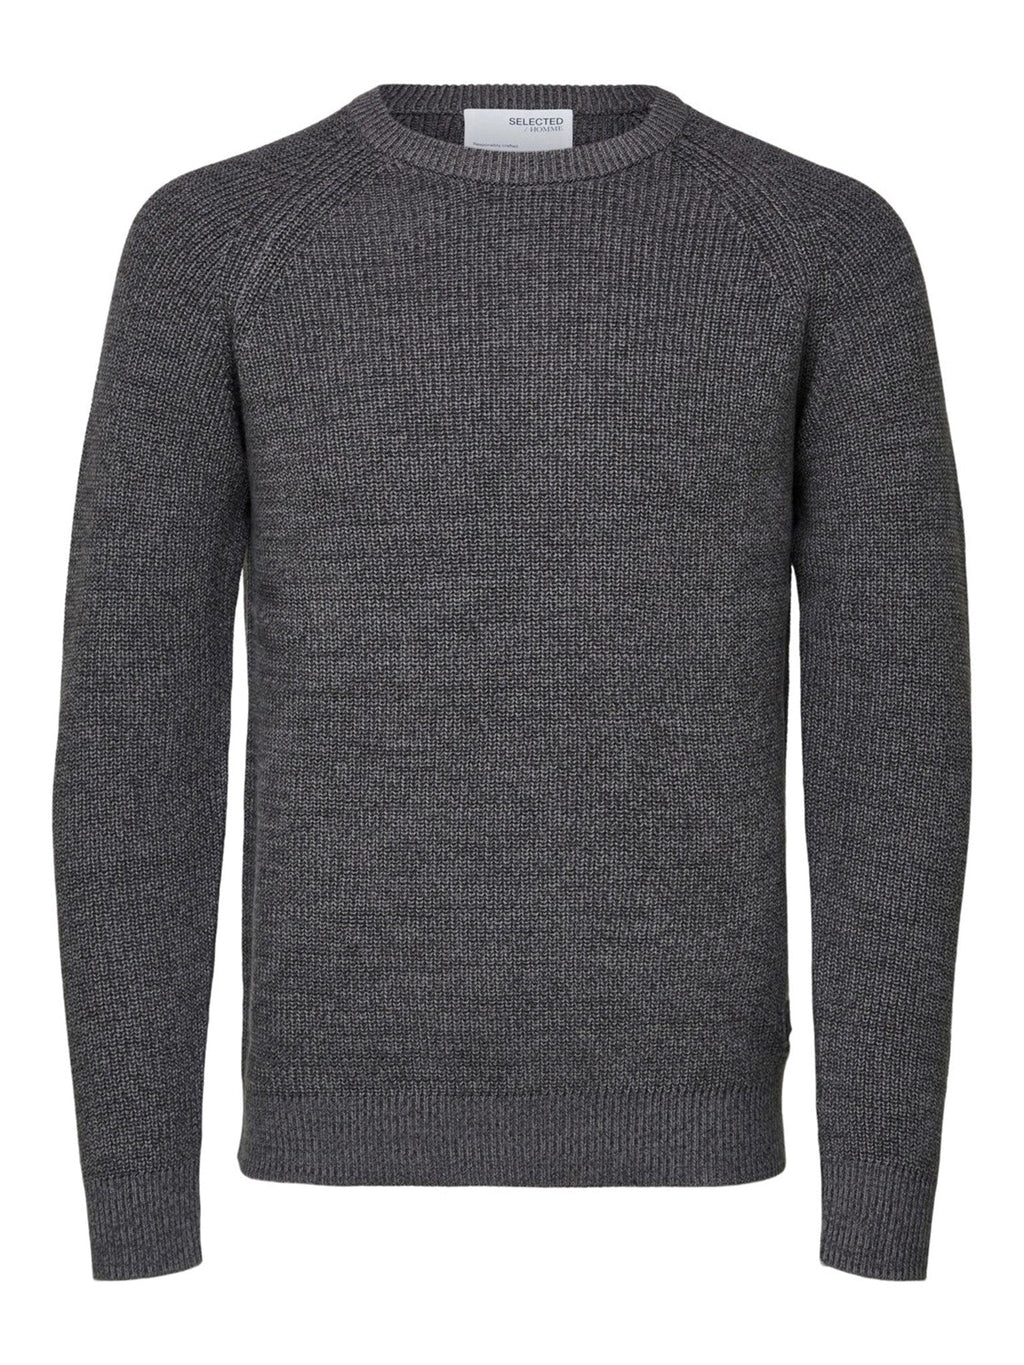 Irven Knit Sweater - Dark Grey